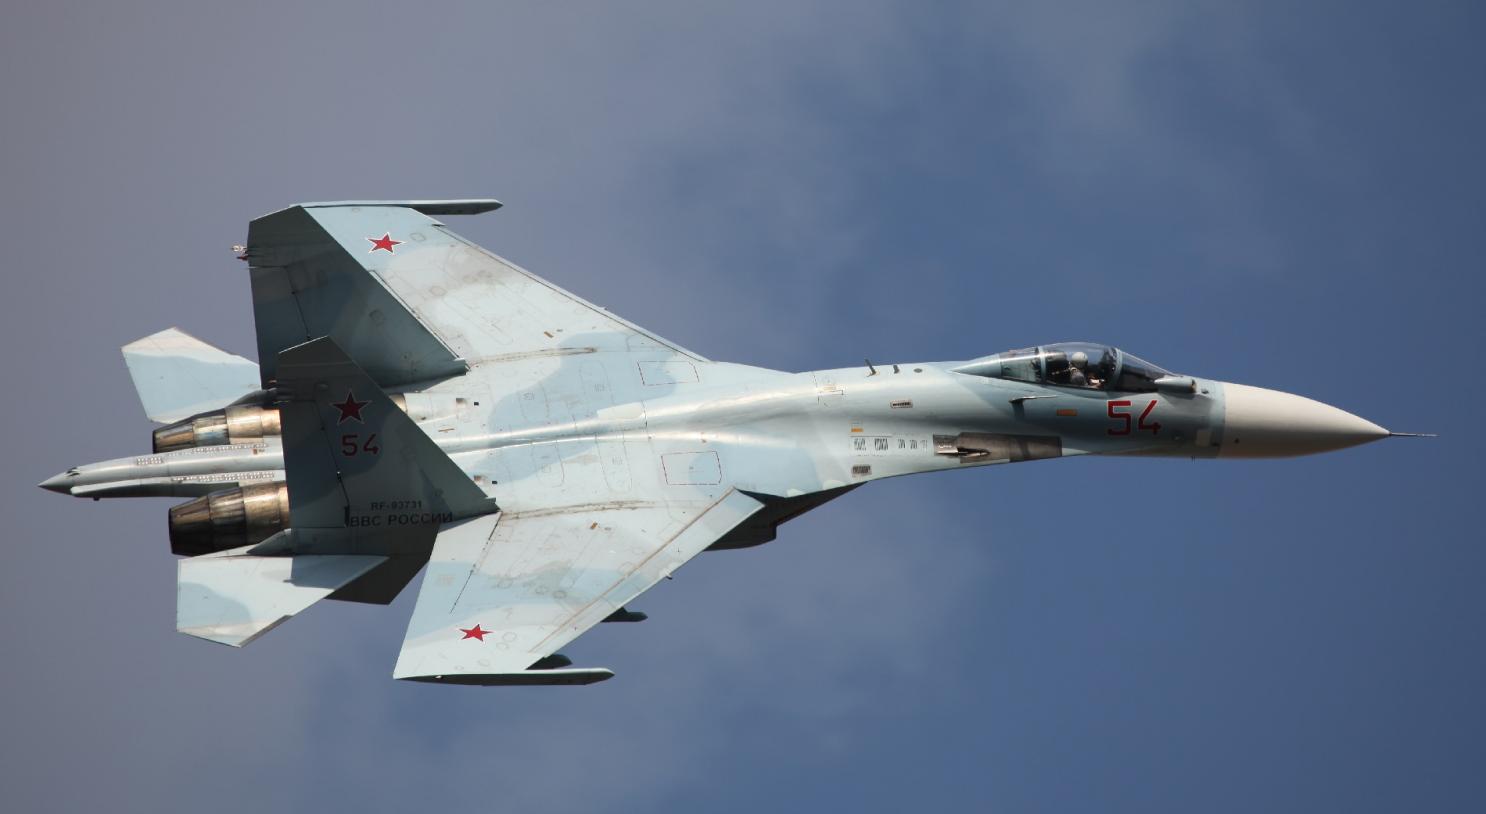 Βίντεο: Ρωσικό Su-27 αναχαιτίζει αμερικανικό και σουηδικό αεροσκάφος